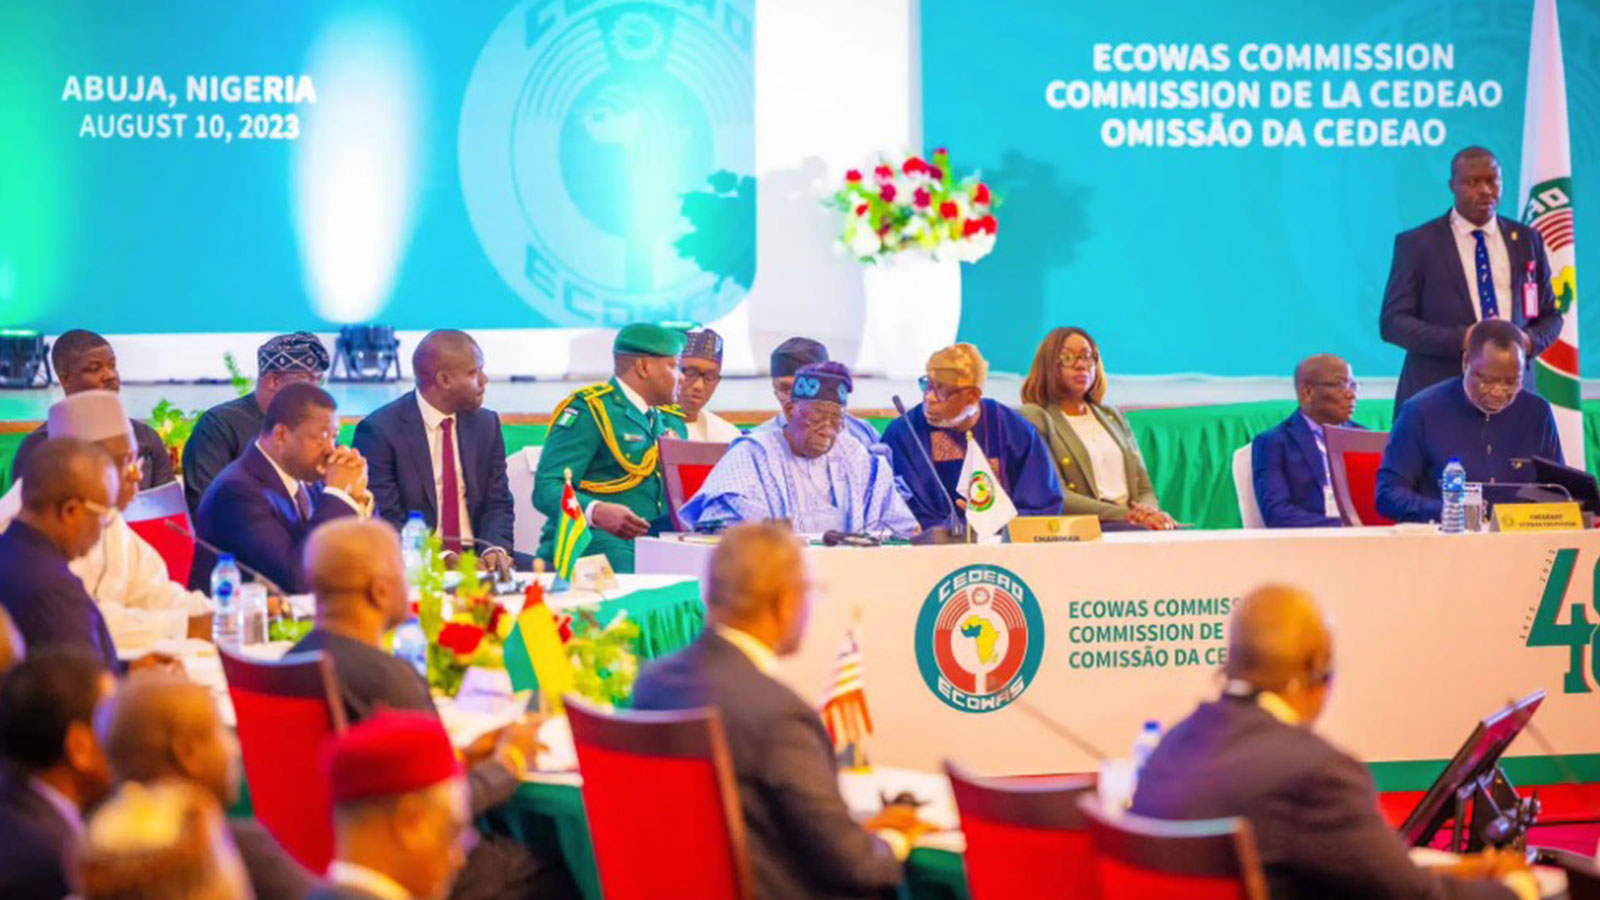 ECOWAS meeting in Lagos, Nigeria on August 10, 2023.